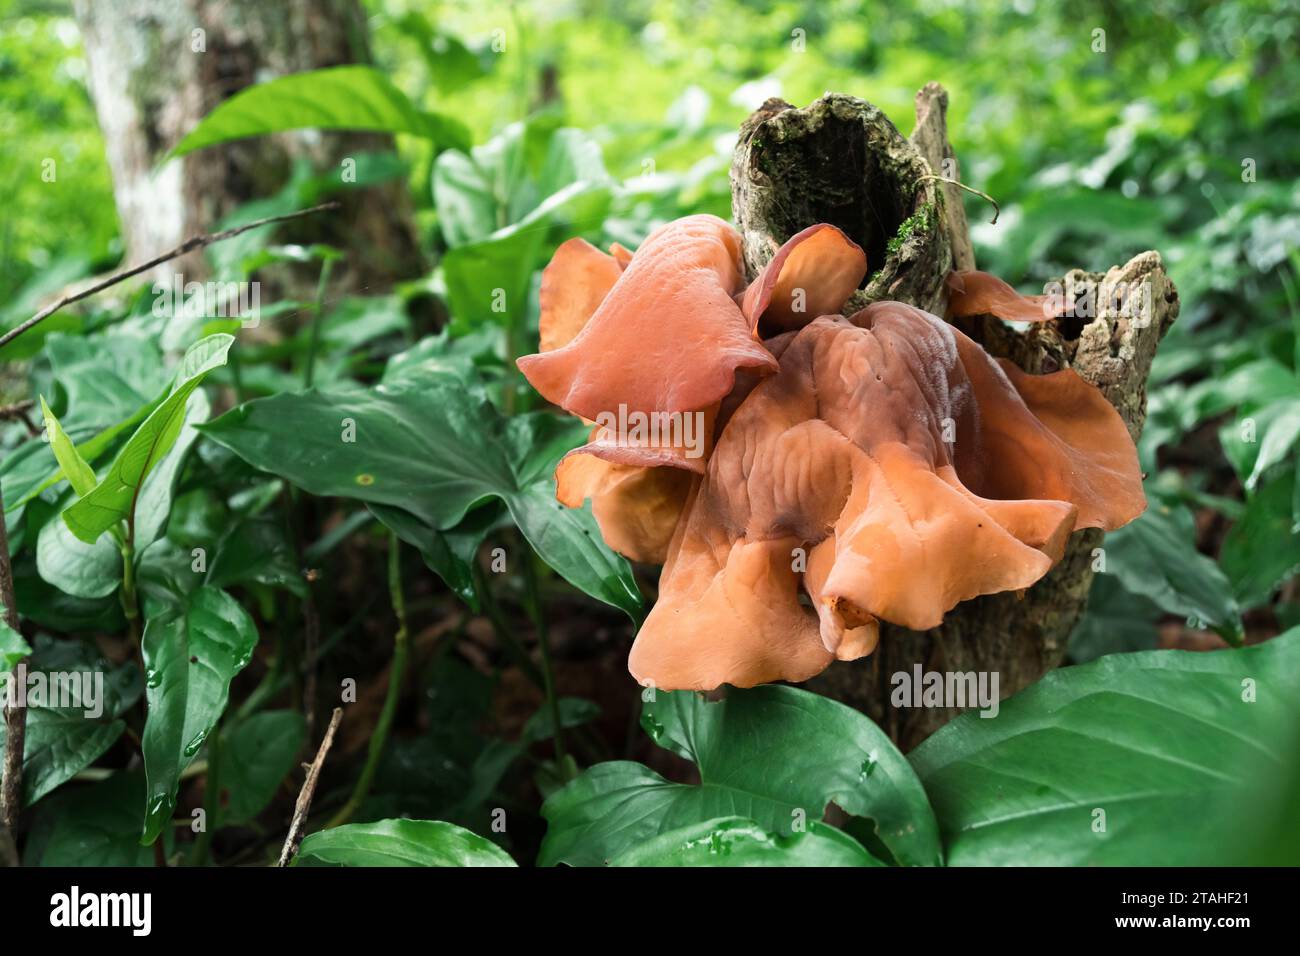 Les champignons poussent sur une bûche pourrie d'une plante de café dans une forêt tropicale Banque D'Images